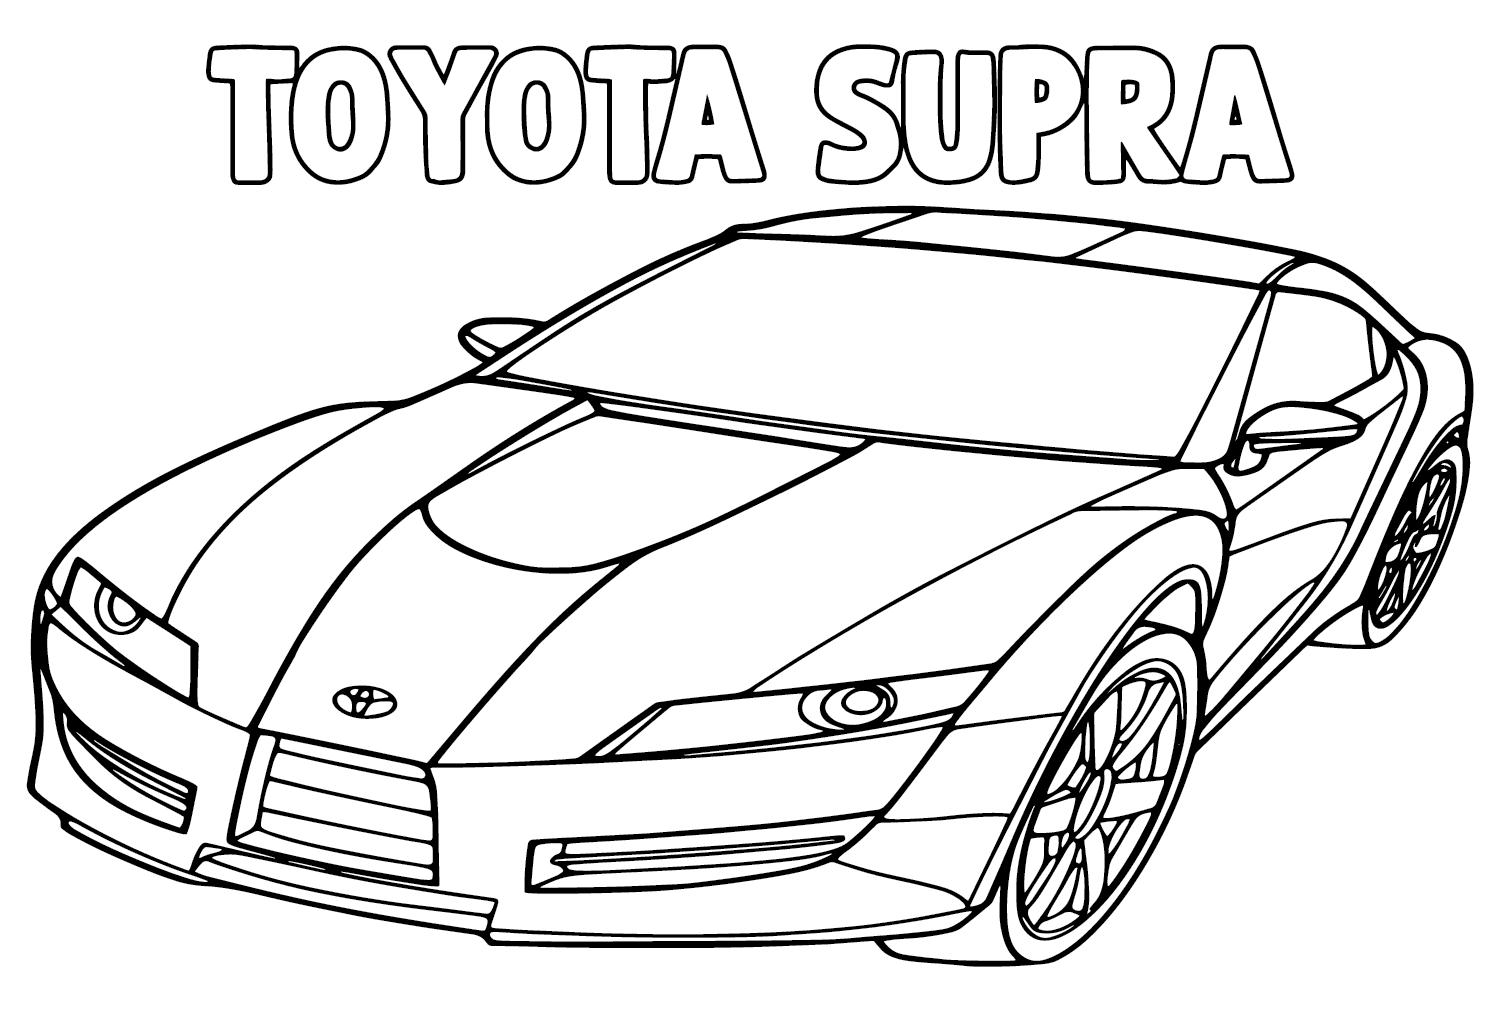 Toyota Supra Página Para Colorear